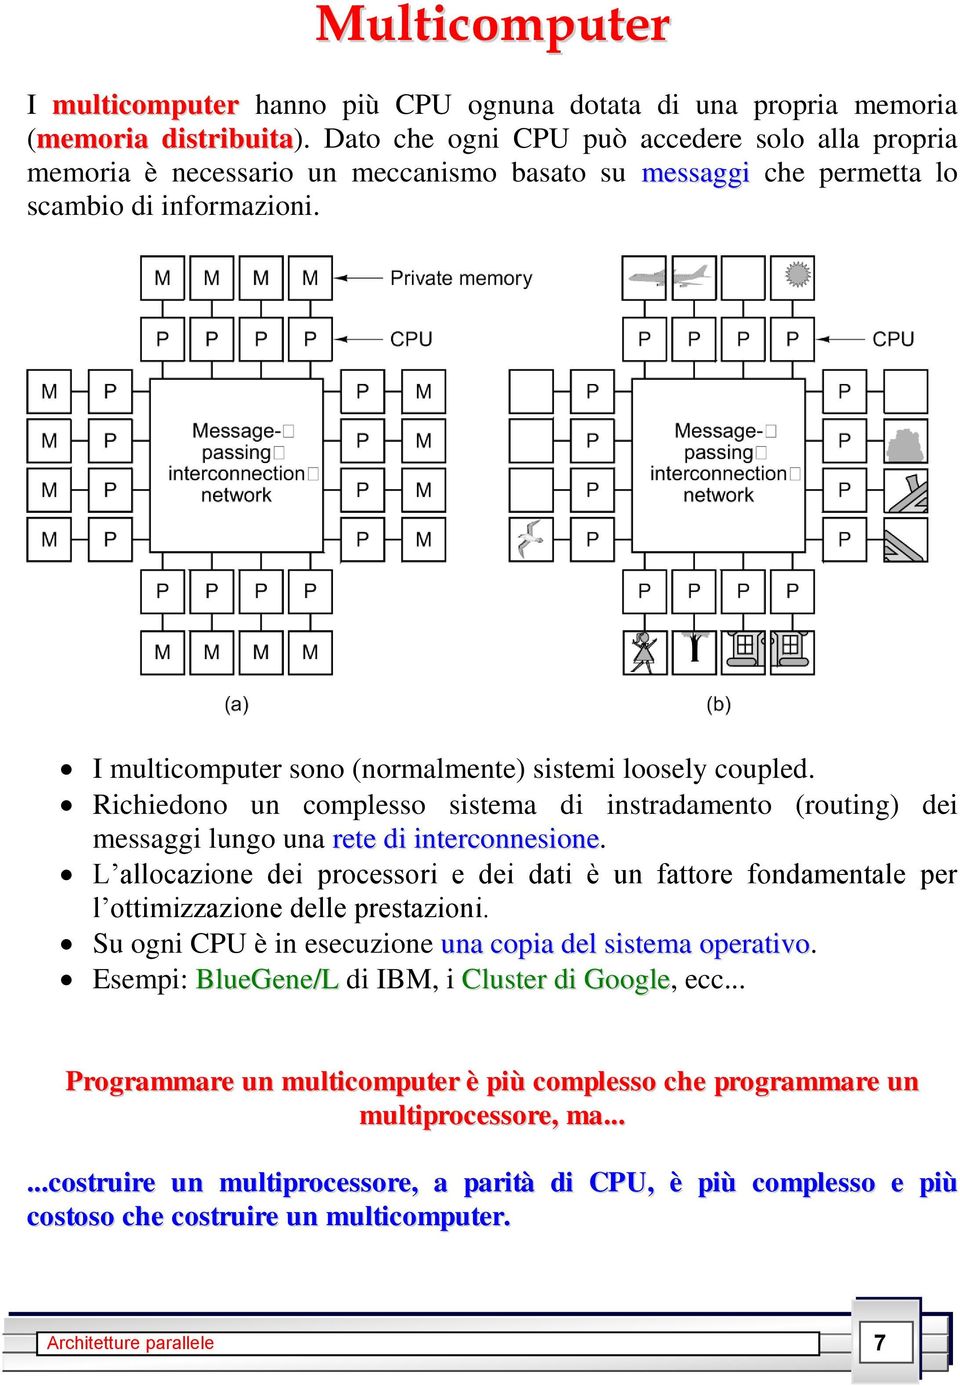 I multicomputer sono (normalmente) sistemi loosely coupled. Richiedono un complesso sistema di instradamento (routing) dei messaggi lungo una rete di interconnesione.